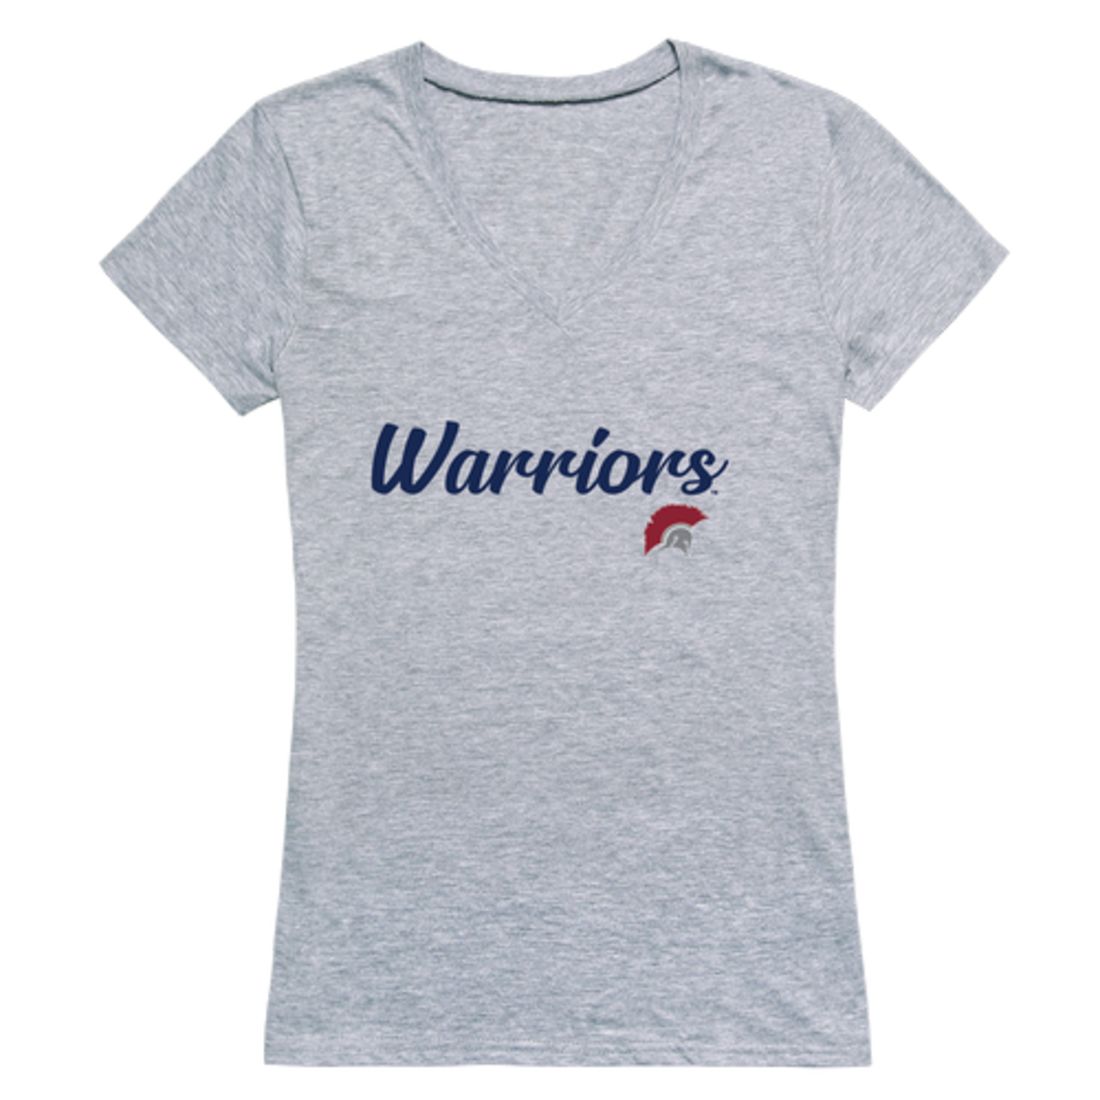 Texas A&M University-Central Texas Warriors Womens Script T-Shirt Tee